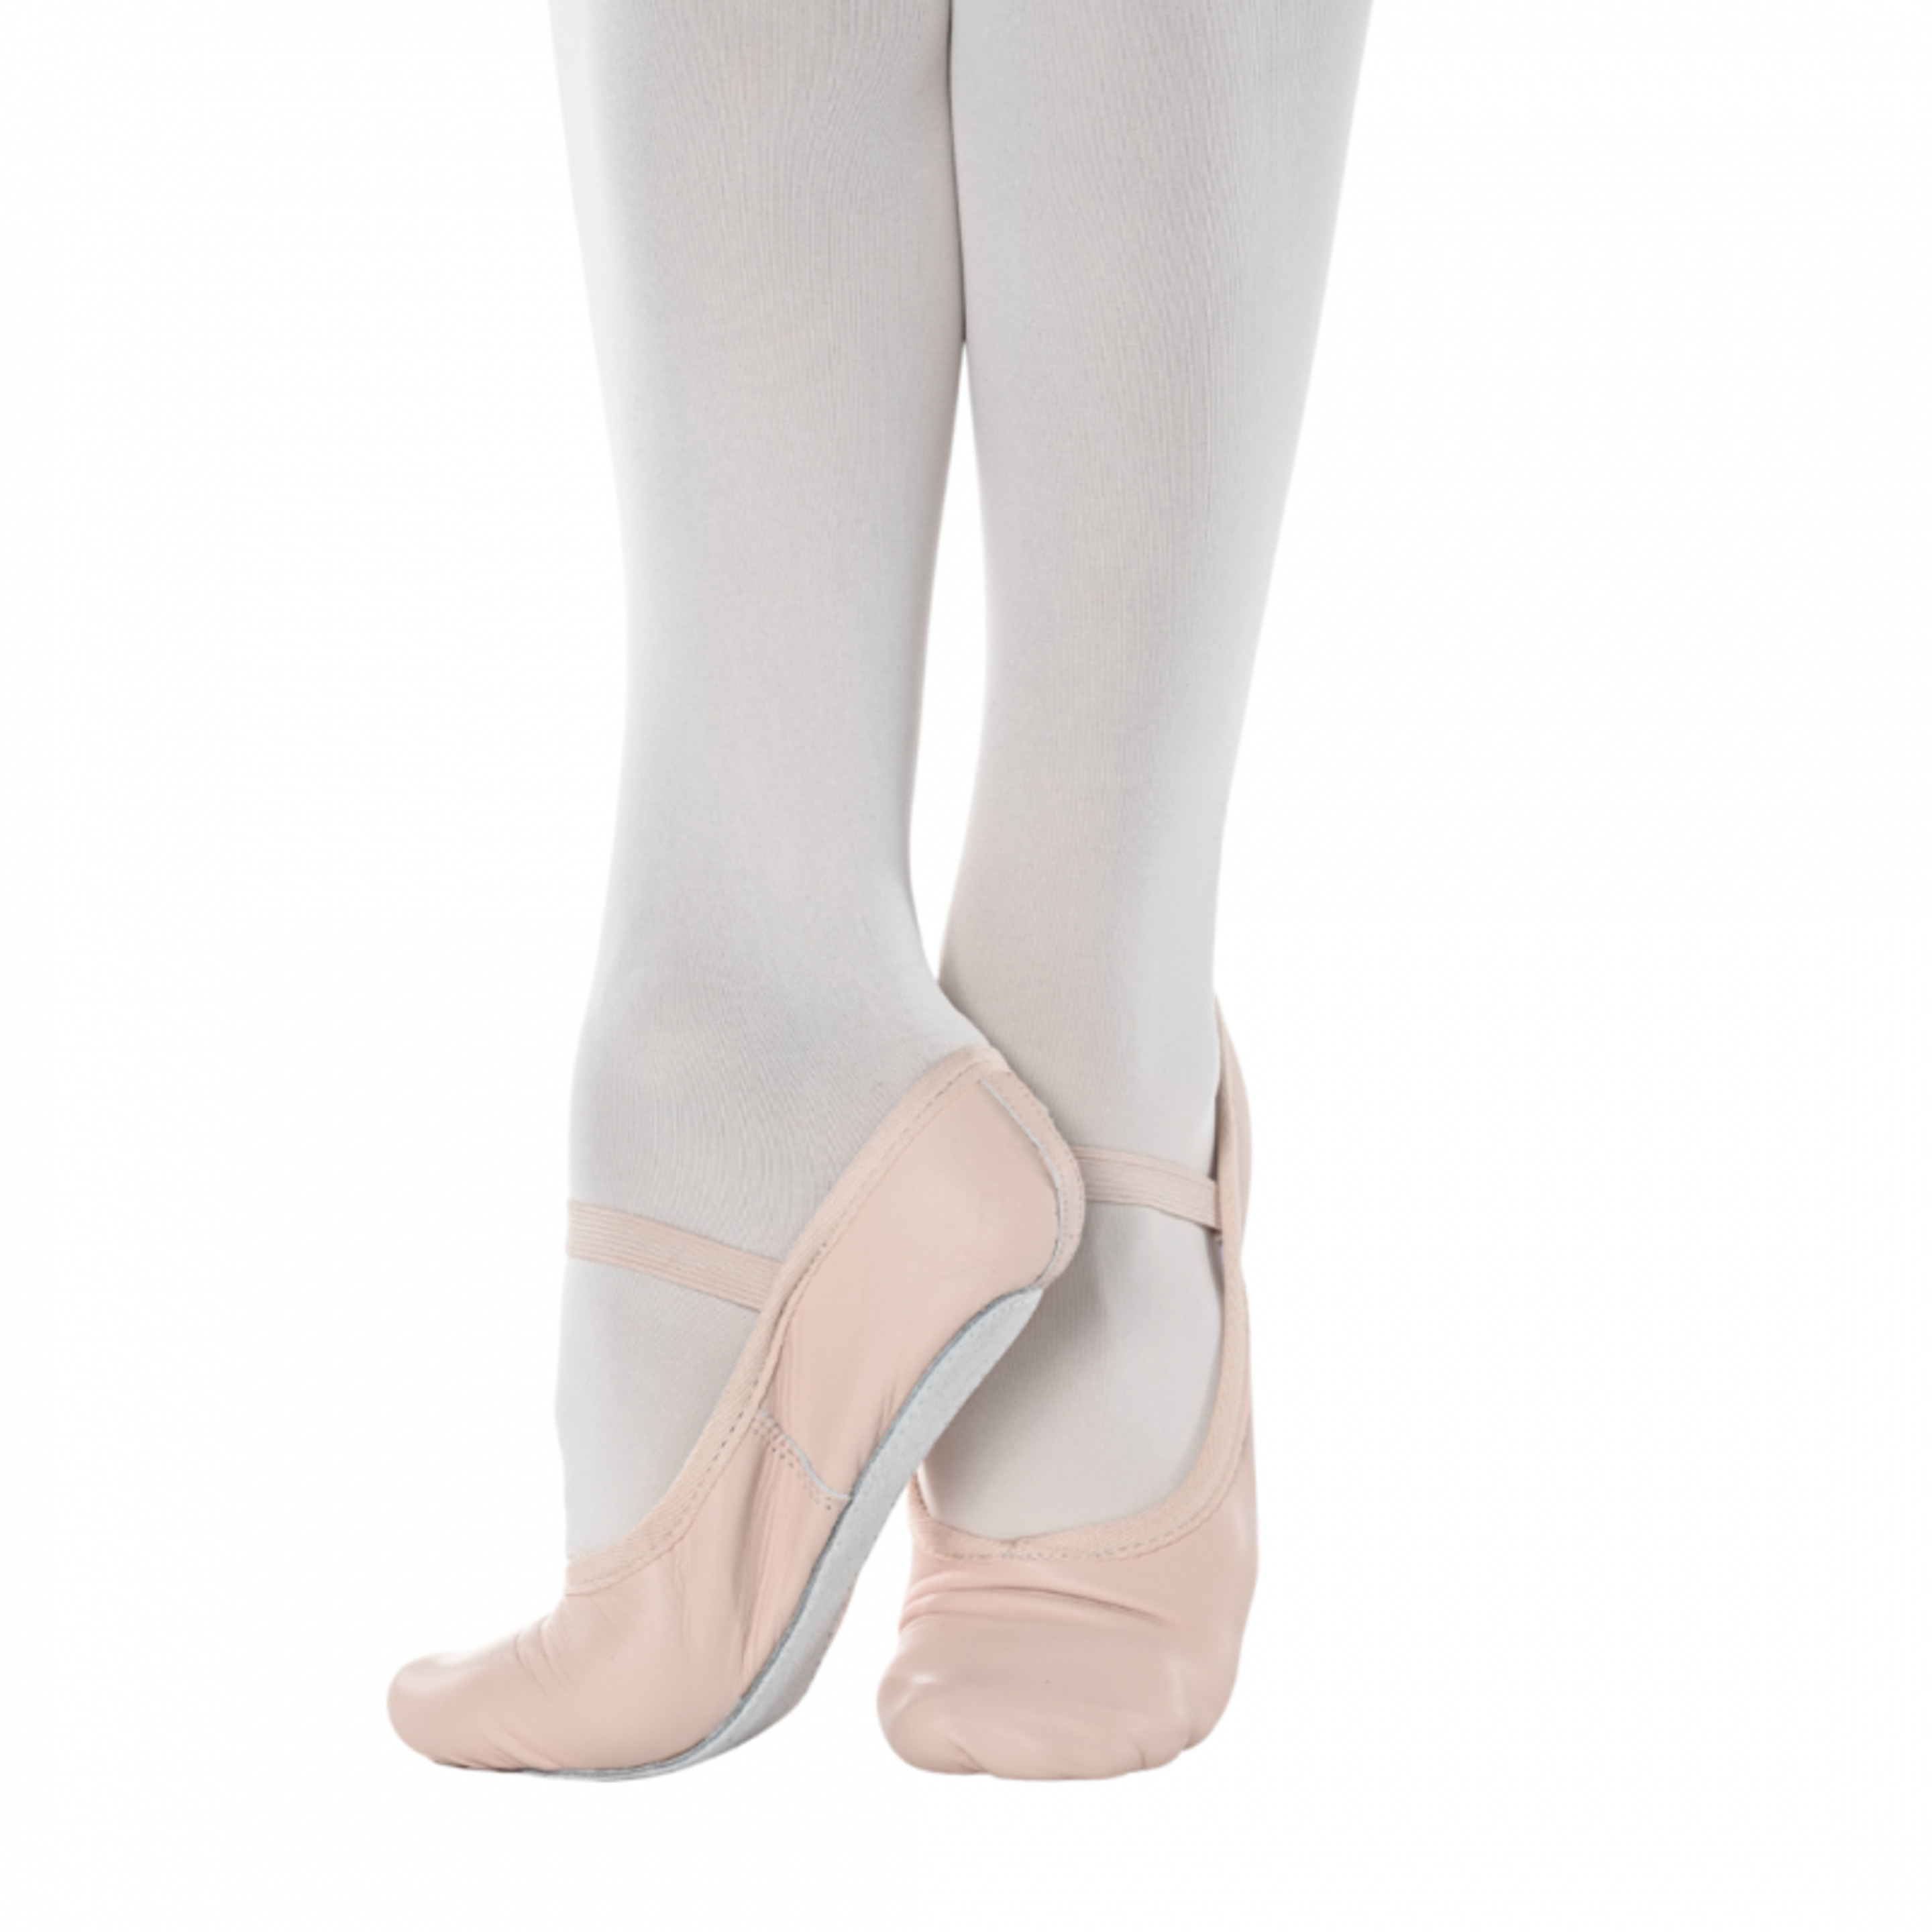 Zapatillas De Ballet Amateur Ana De Cuero Salmón Con Elástico Y Suela Completa - Nude  MKP